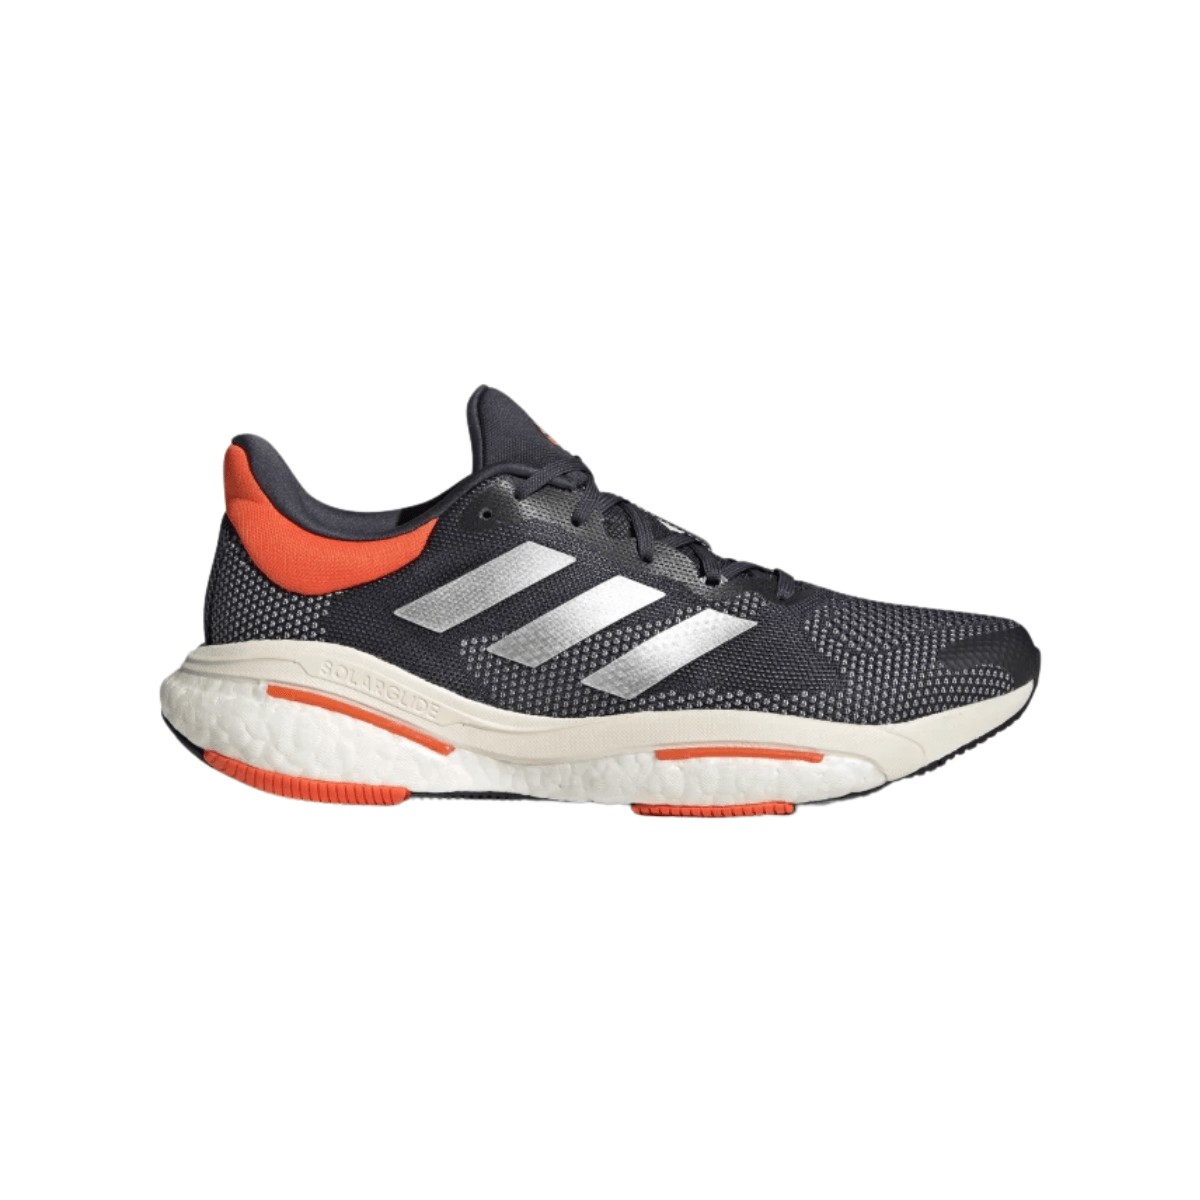 Adidas Solar Glide 5M Shoes Gray Orange AW22, Size UK 8